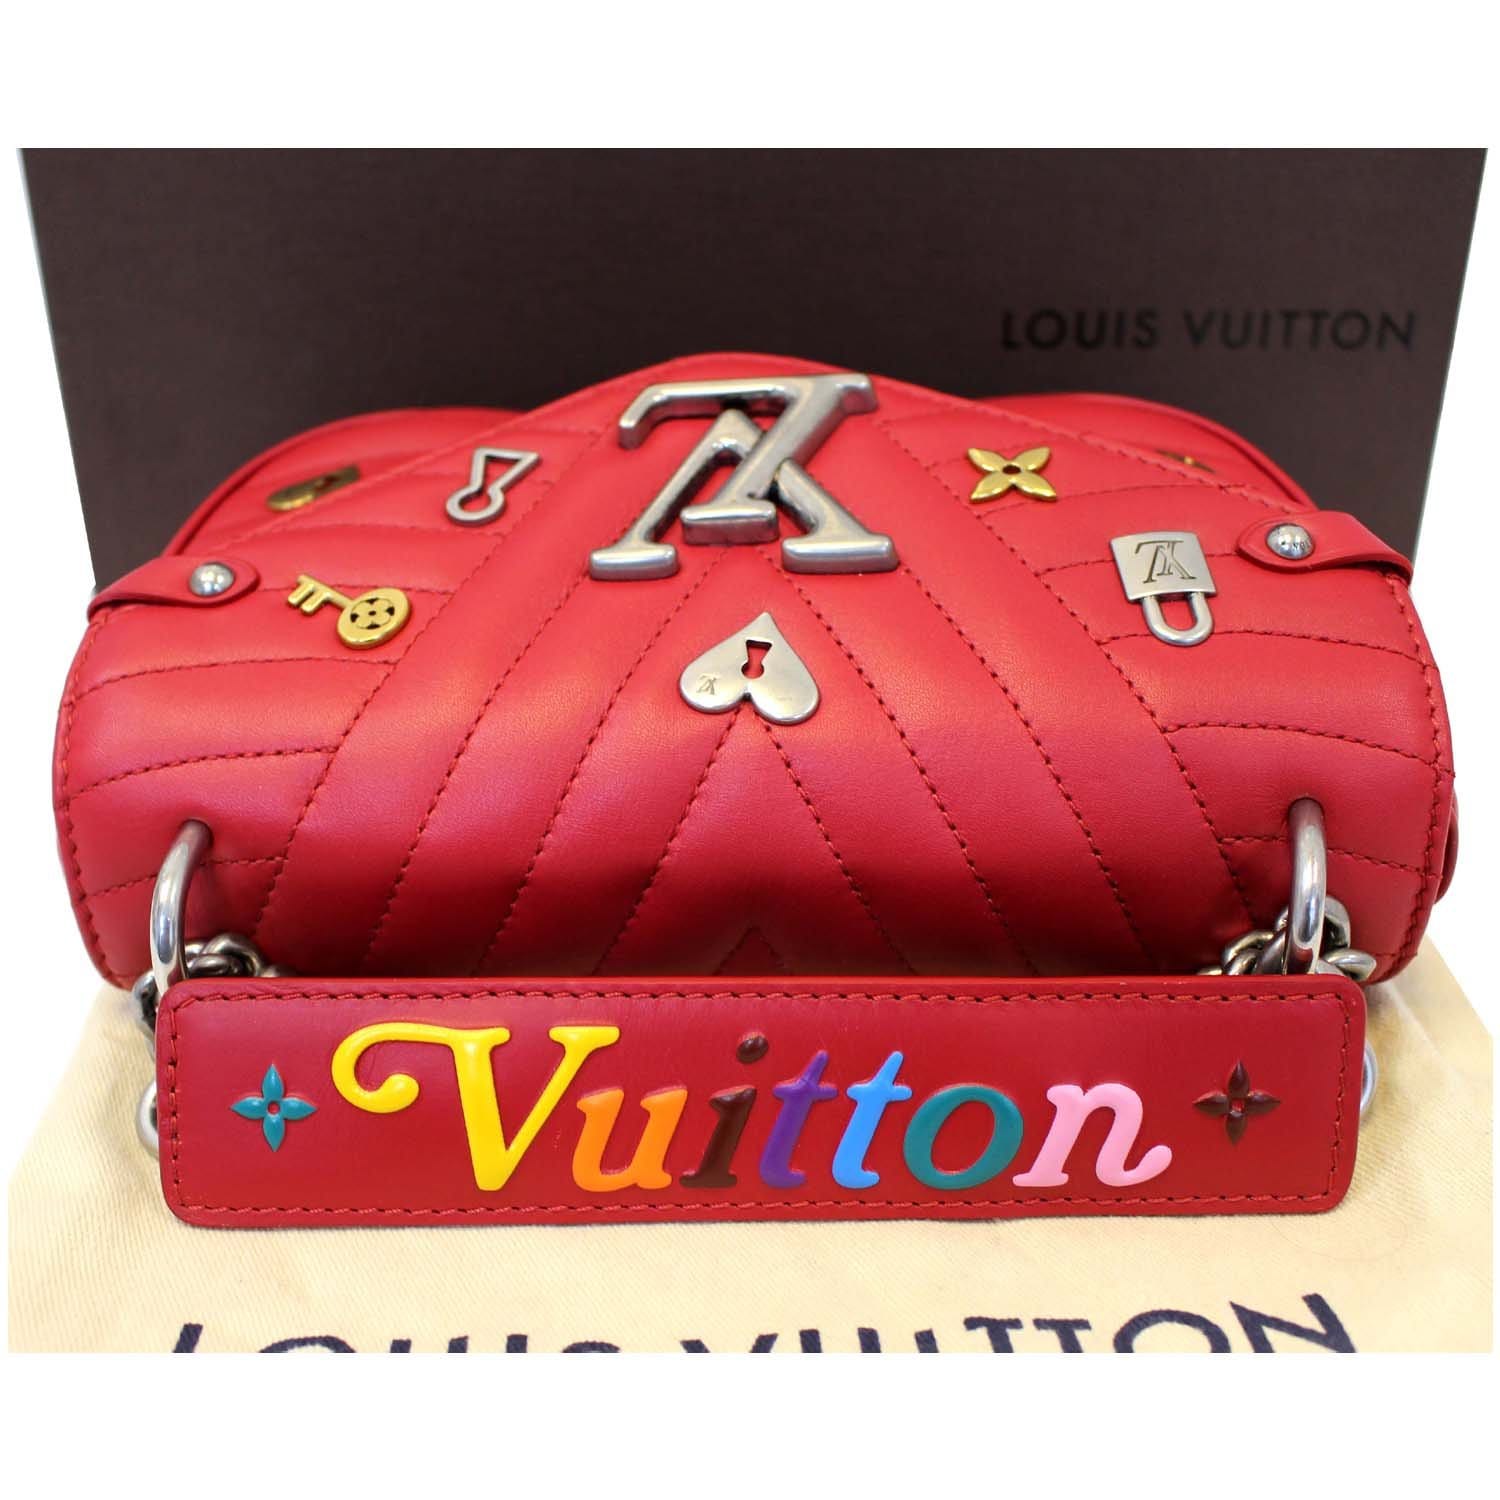 Louis Vuitton PM Wave Love Lock Chain Shoulder Bag